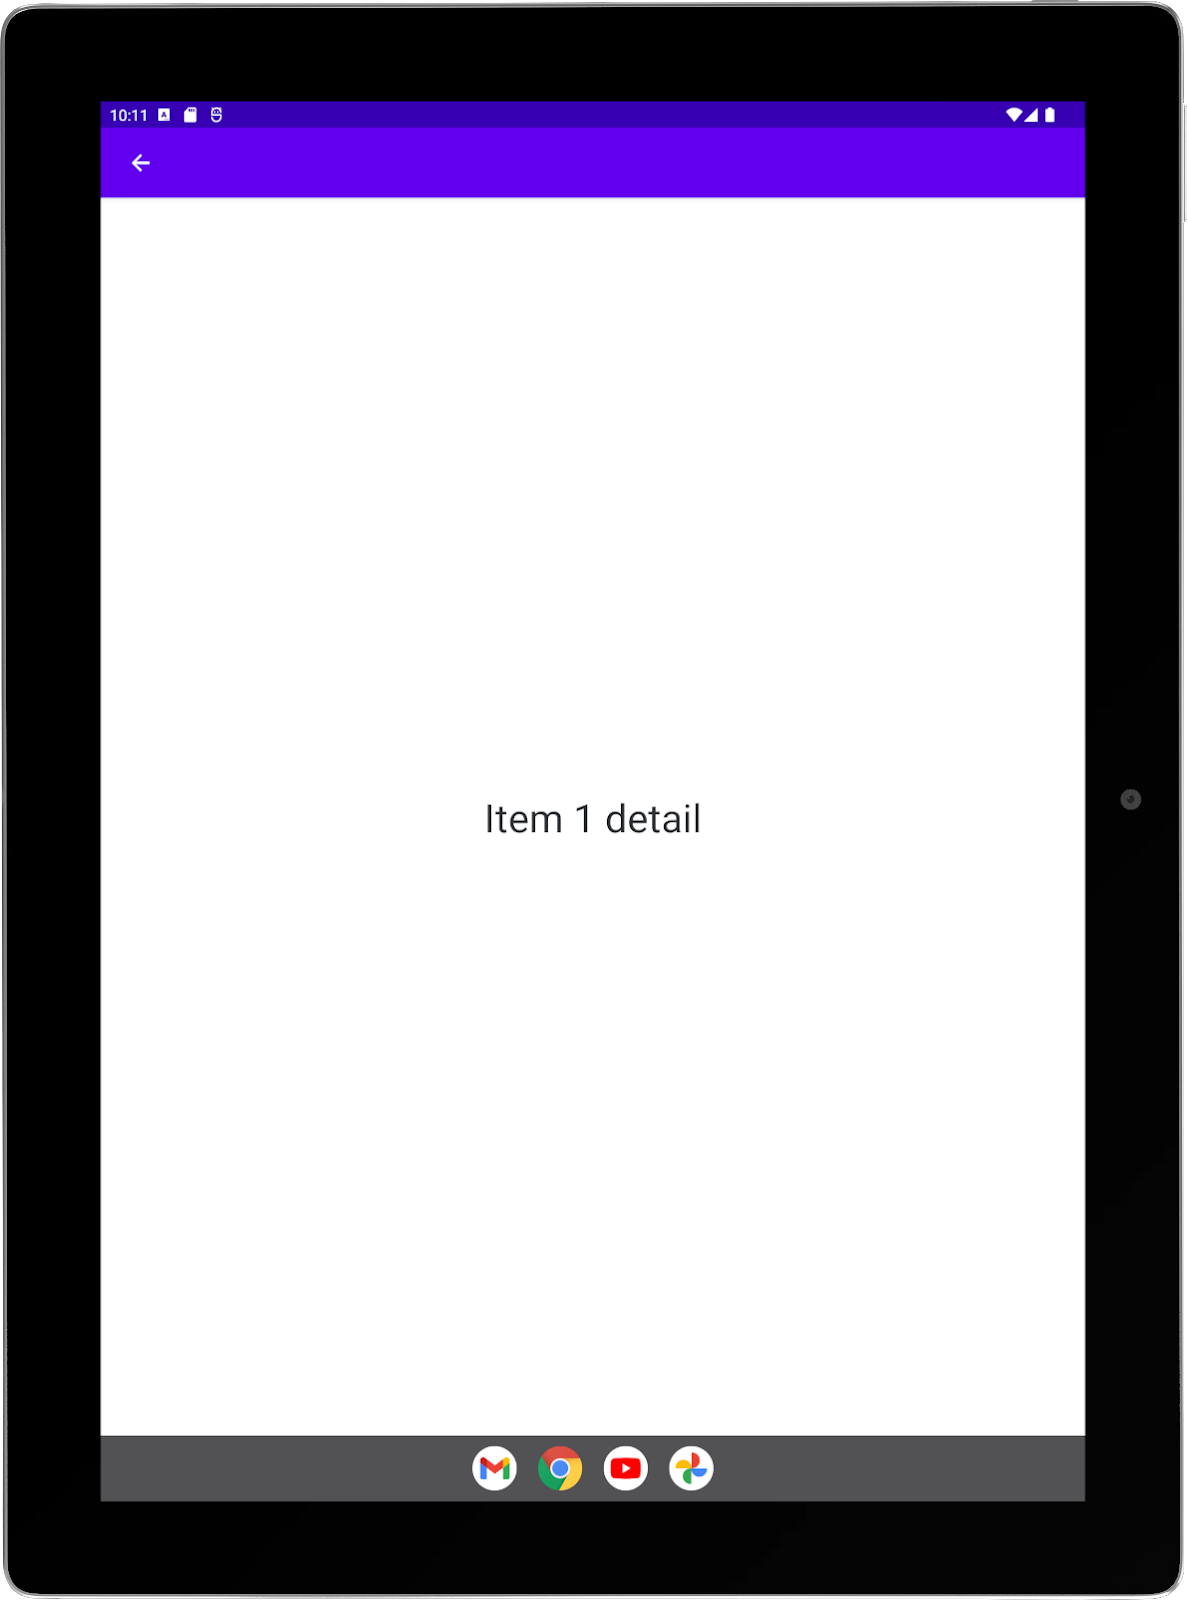 Grande tablette avec une application exemple exécutée en mode portrait Activité "Détail" en plein écran